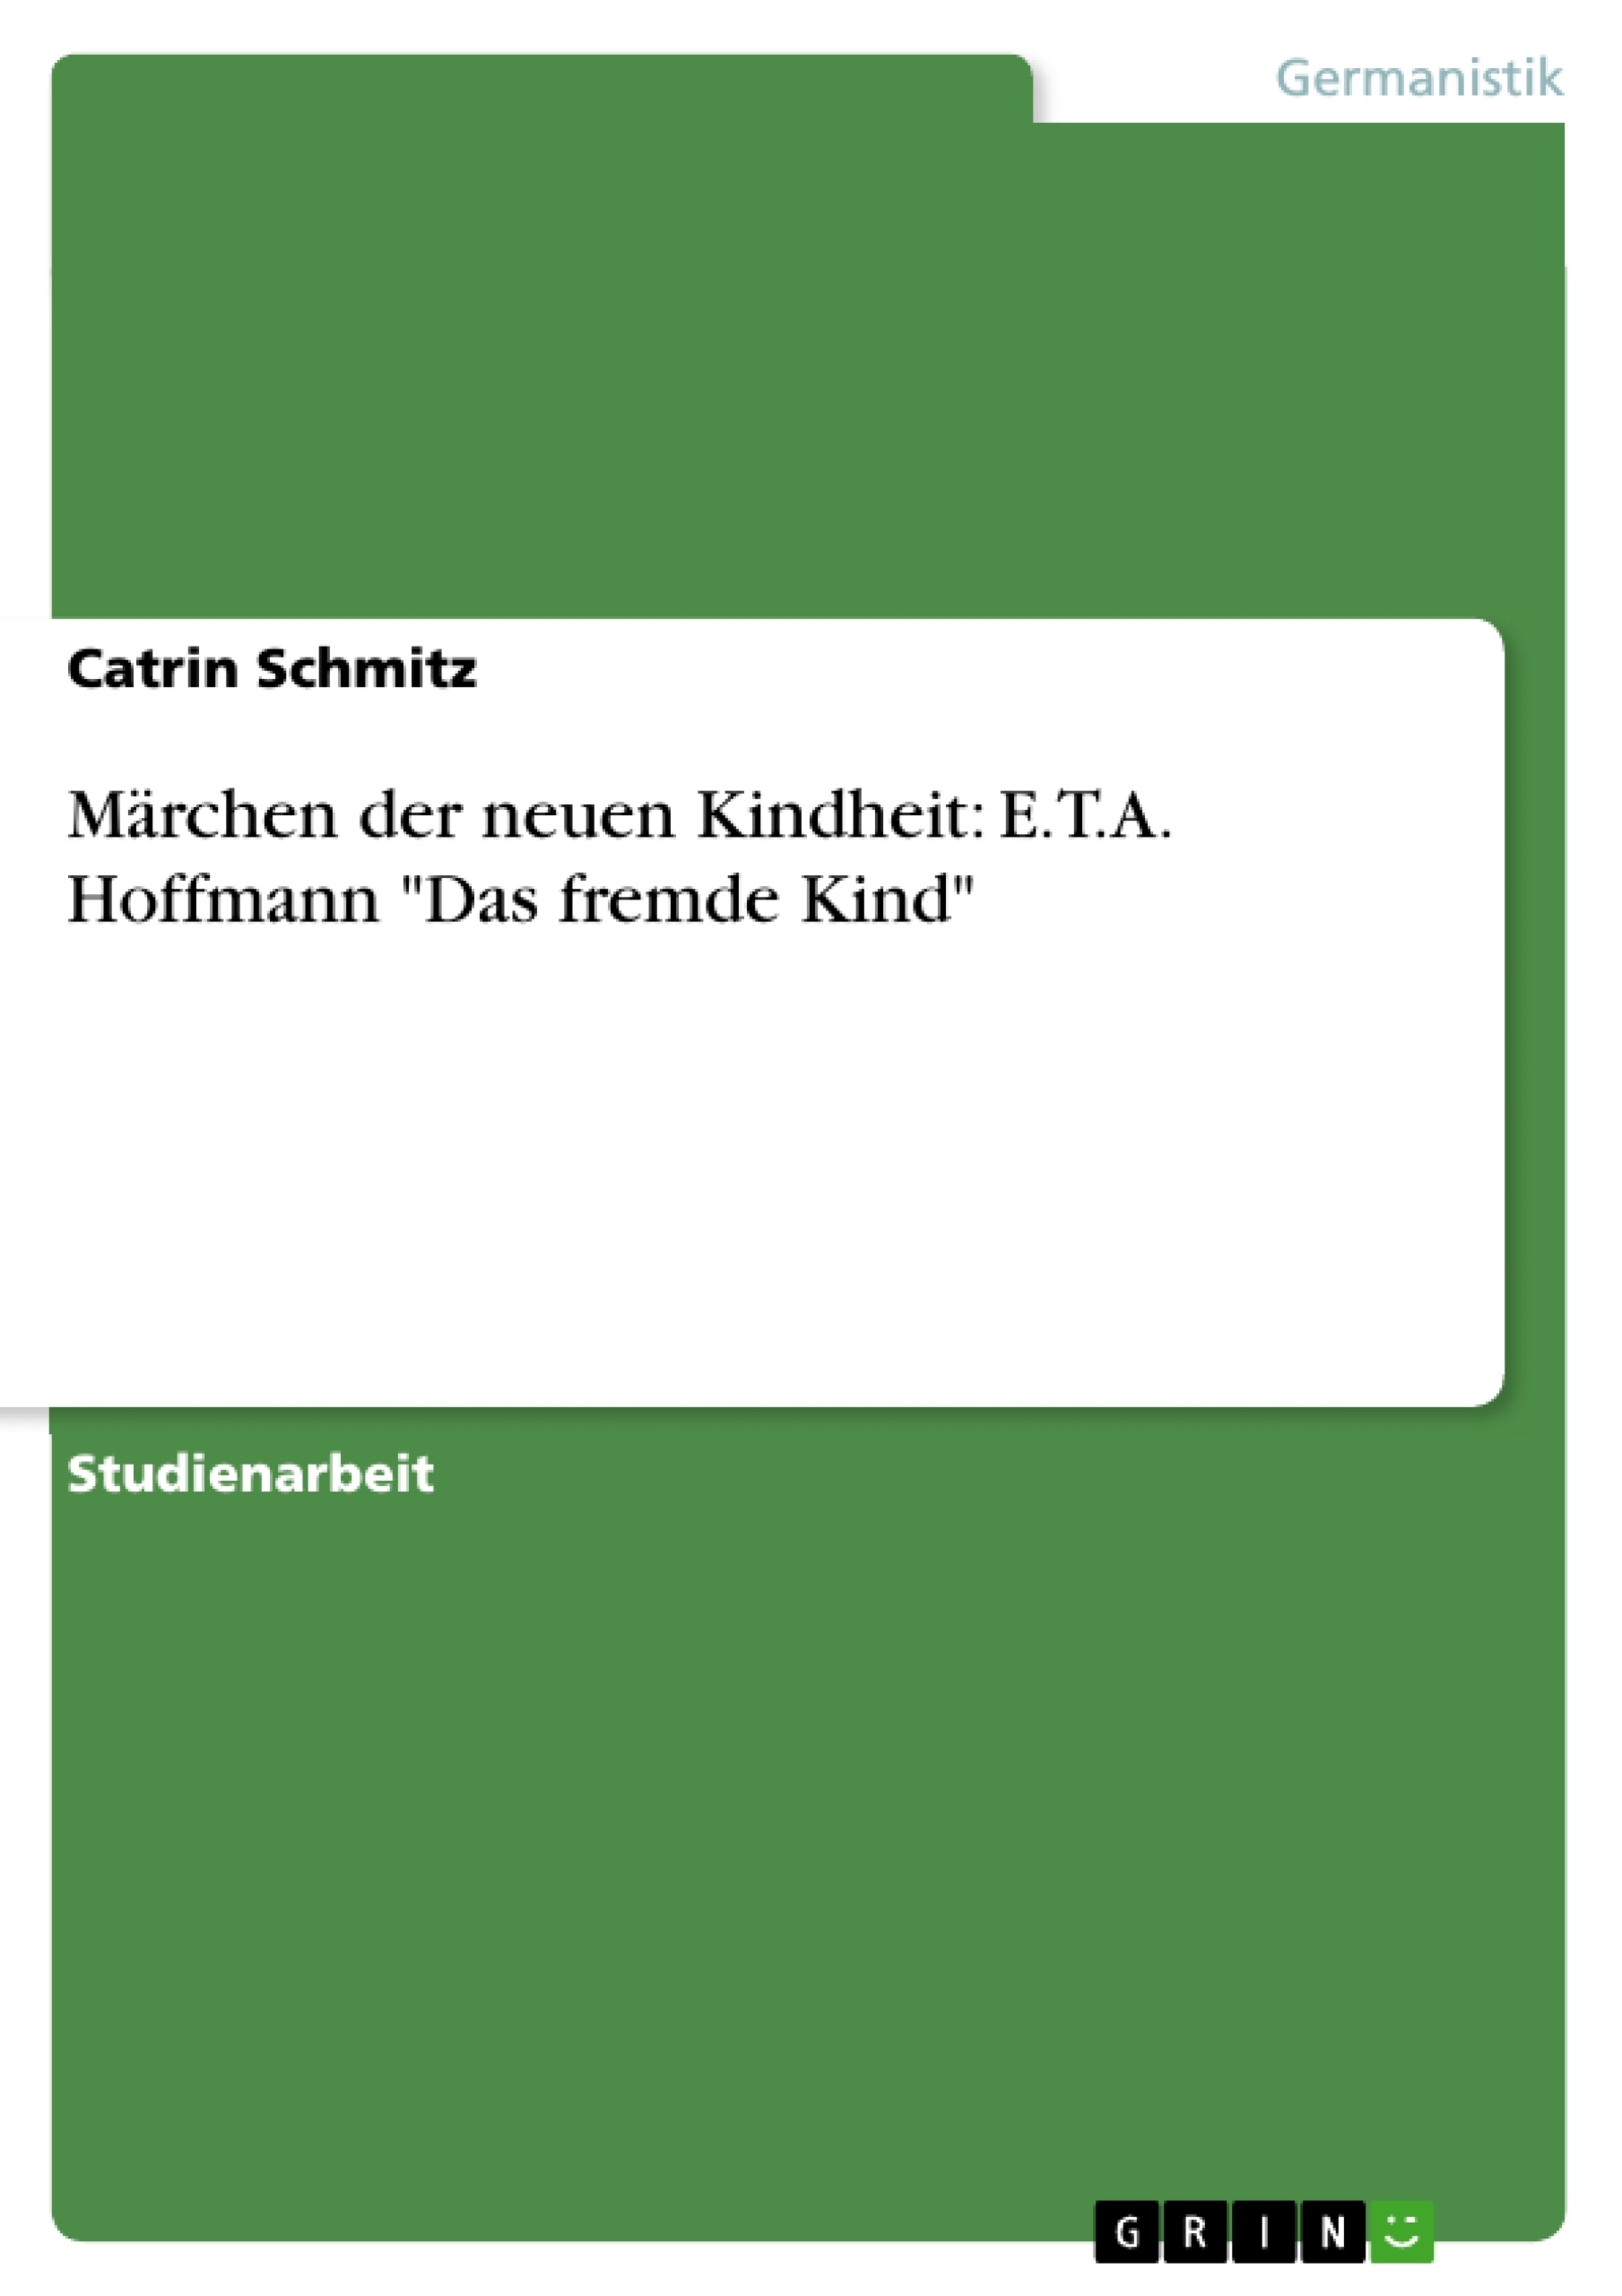 Título: Märchen der neuen Kindheit: E.T.A. Hoffmann "Das fremde Kind"